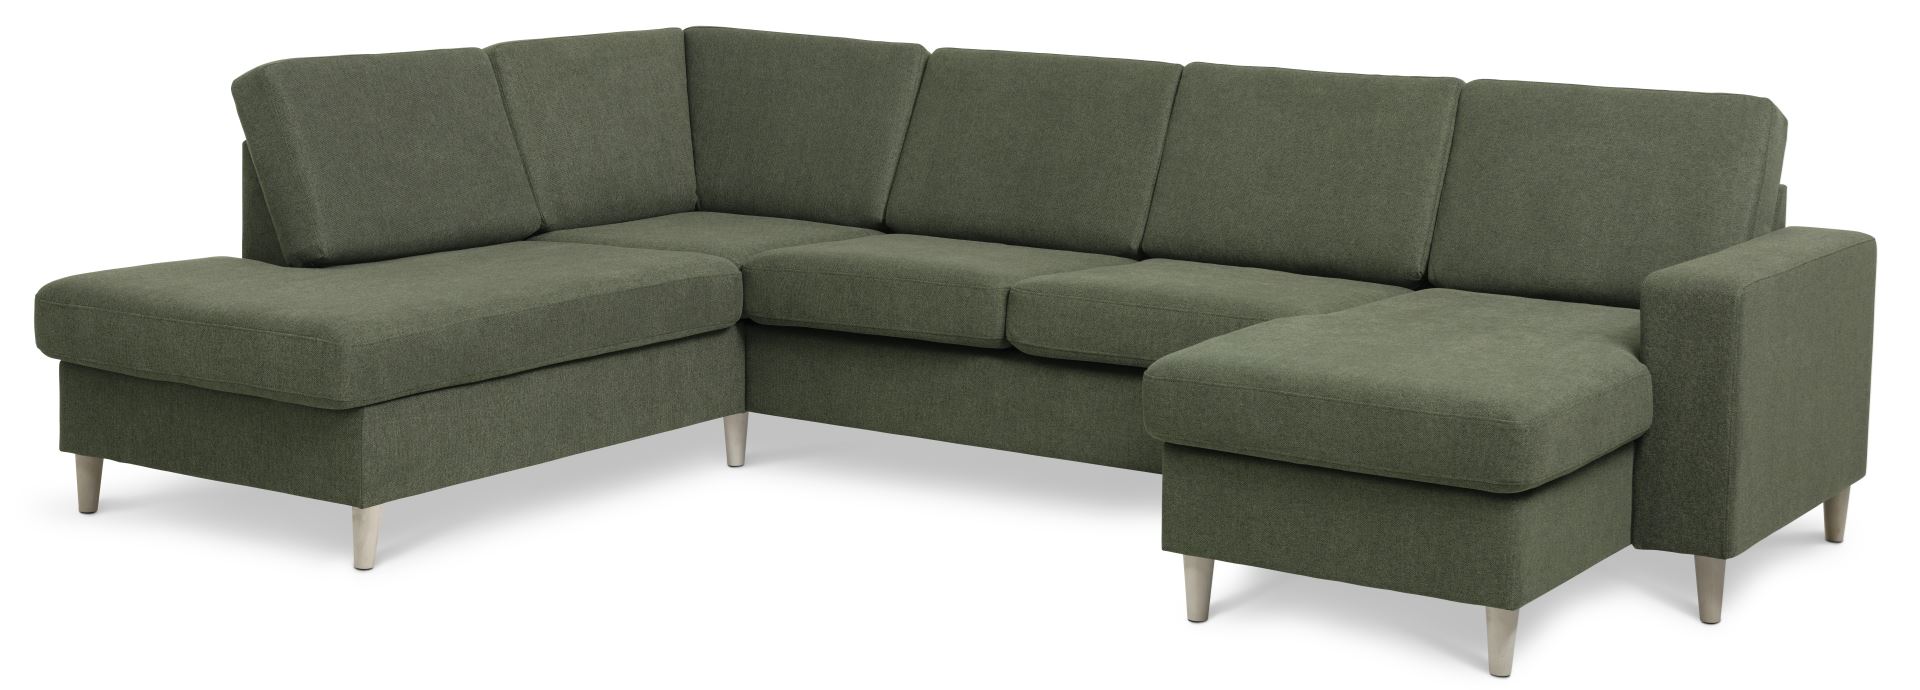 Pan set 4 U OE left sofa med chaiselong - vinter mosgrøn polyester stof og natur træ